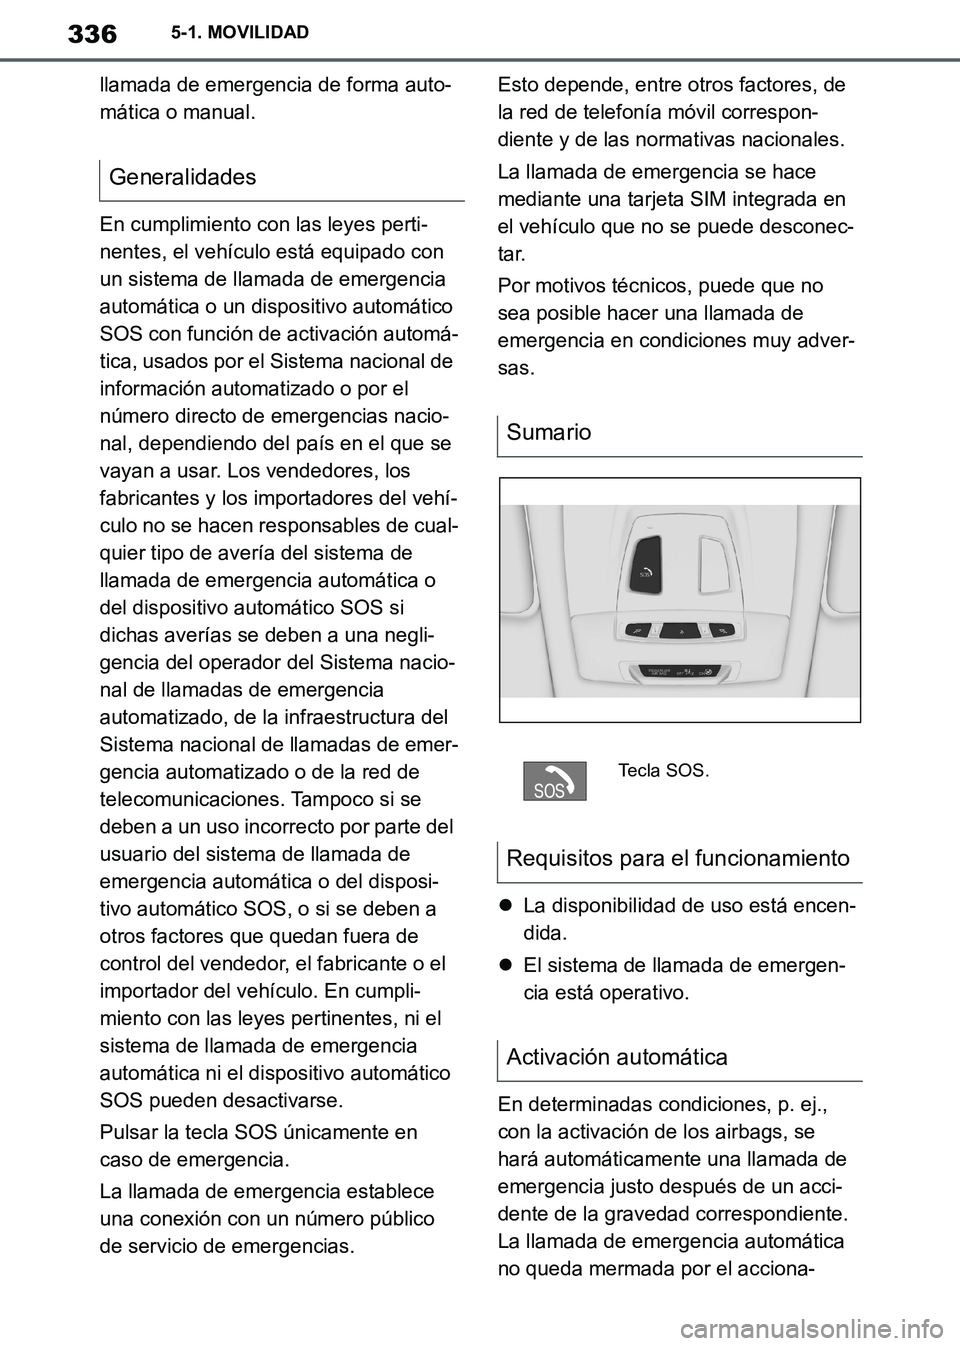 TOYOTA SUPRA 2019  Manuale de Empleo (in Spanish) 336
Supra Owners Manual_ES
5-1. MOVILIDAD
llamada de emergencia de forma auto-
mática o manual.
En cumplimiento con las leyes perti-
nentes, el vehículo está equipado con 
un sistema de llamada de